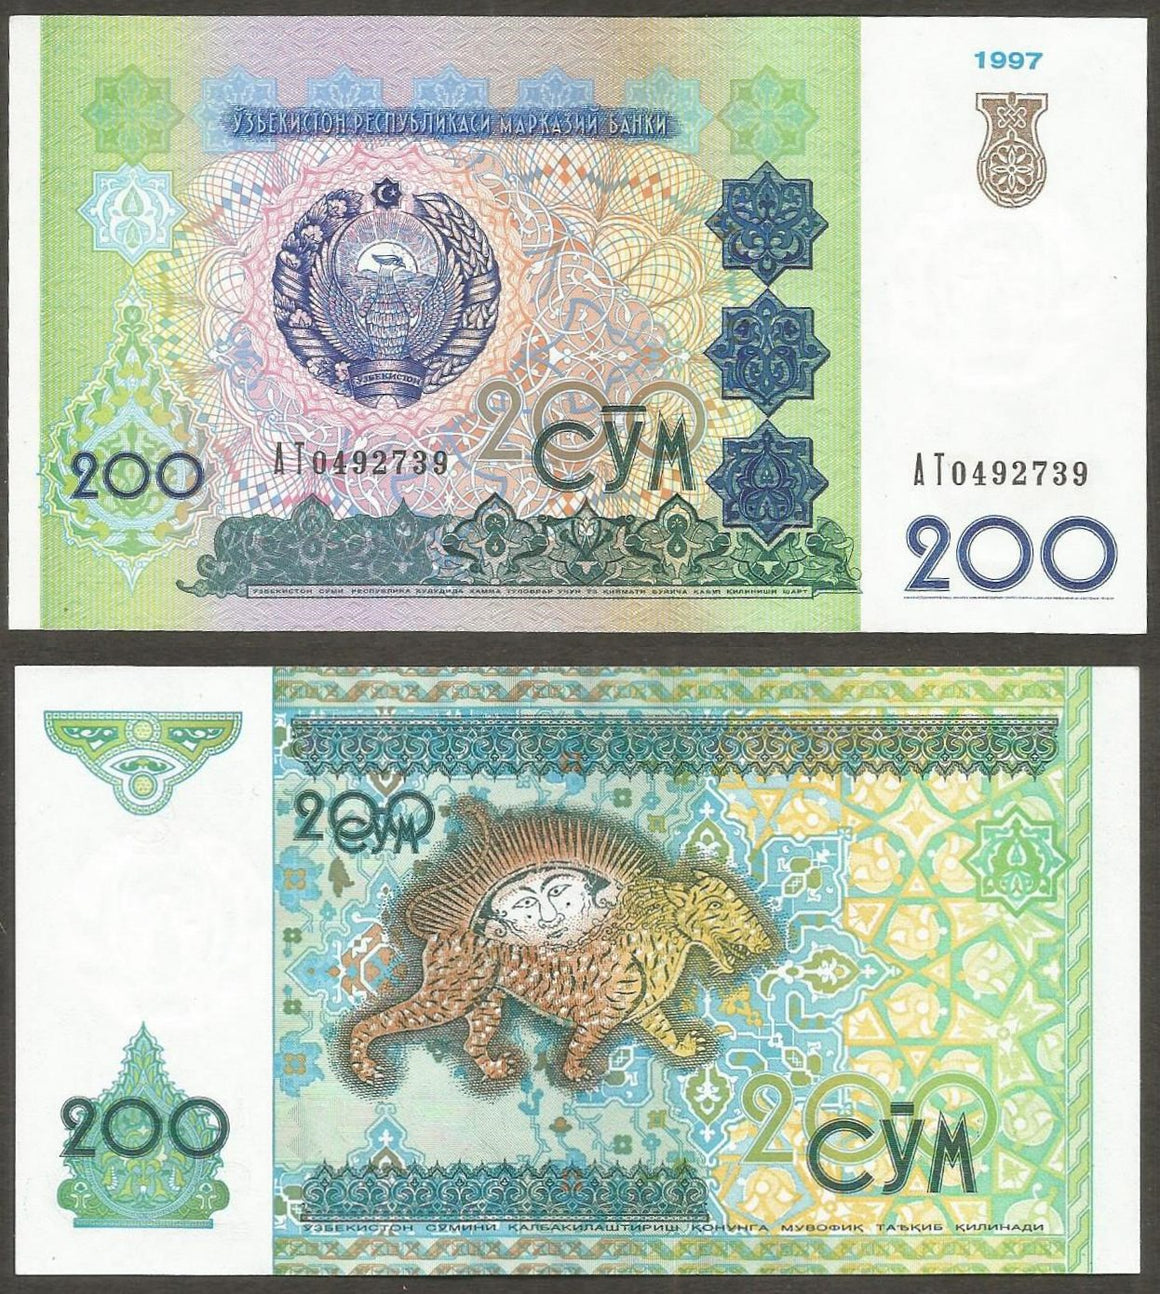 1997 UZBEKISTAN 200 SOM UNC Currency Note – Worldwide-mint